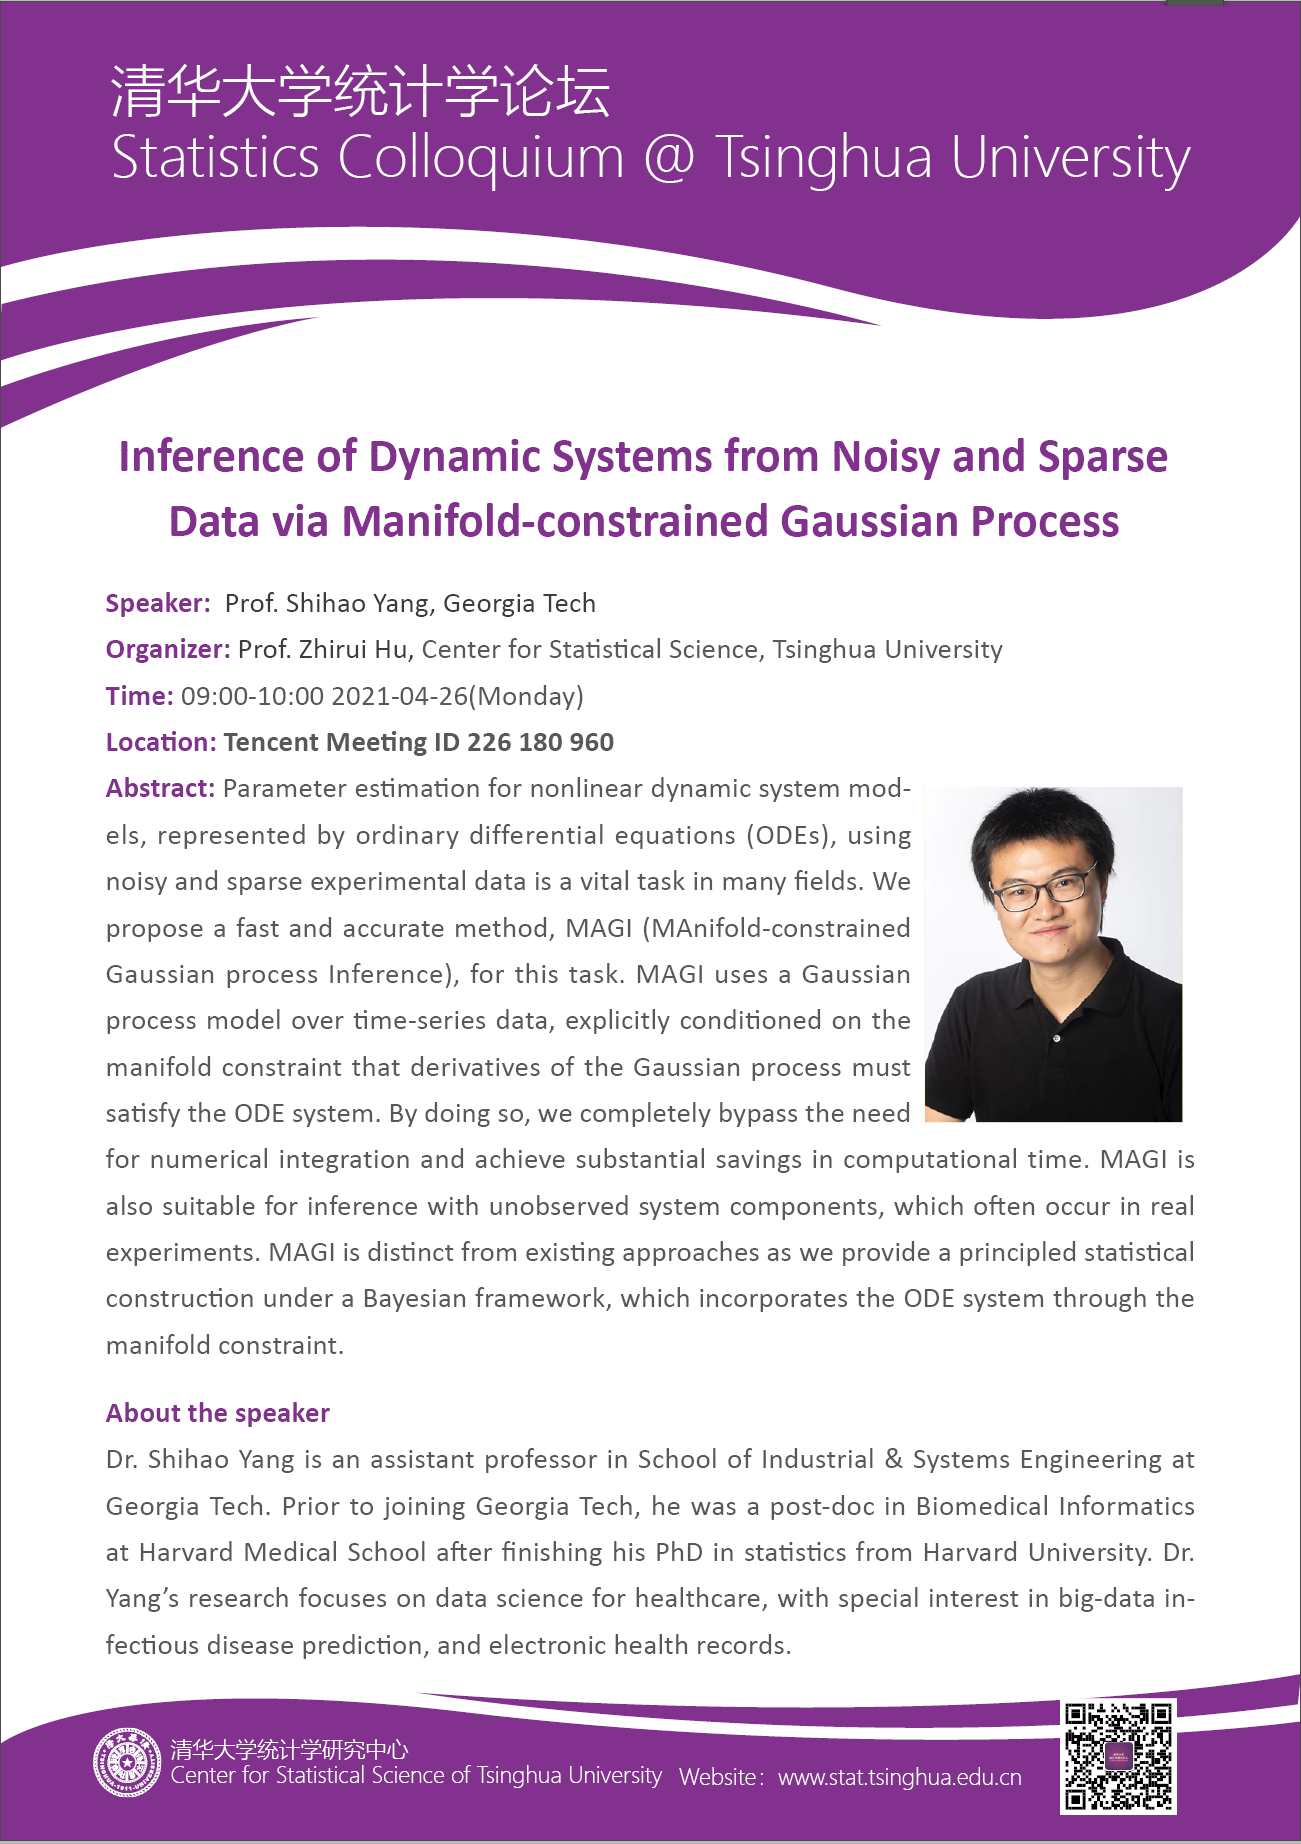 【统计学论坛】Inference of Dynamic Systems form Noisy and Sparse Data via Manifold-constrained Gaussian Process